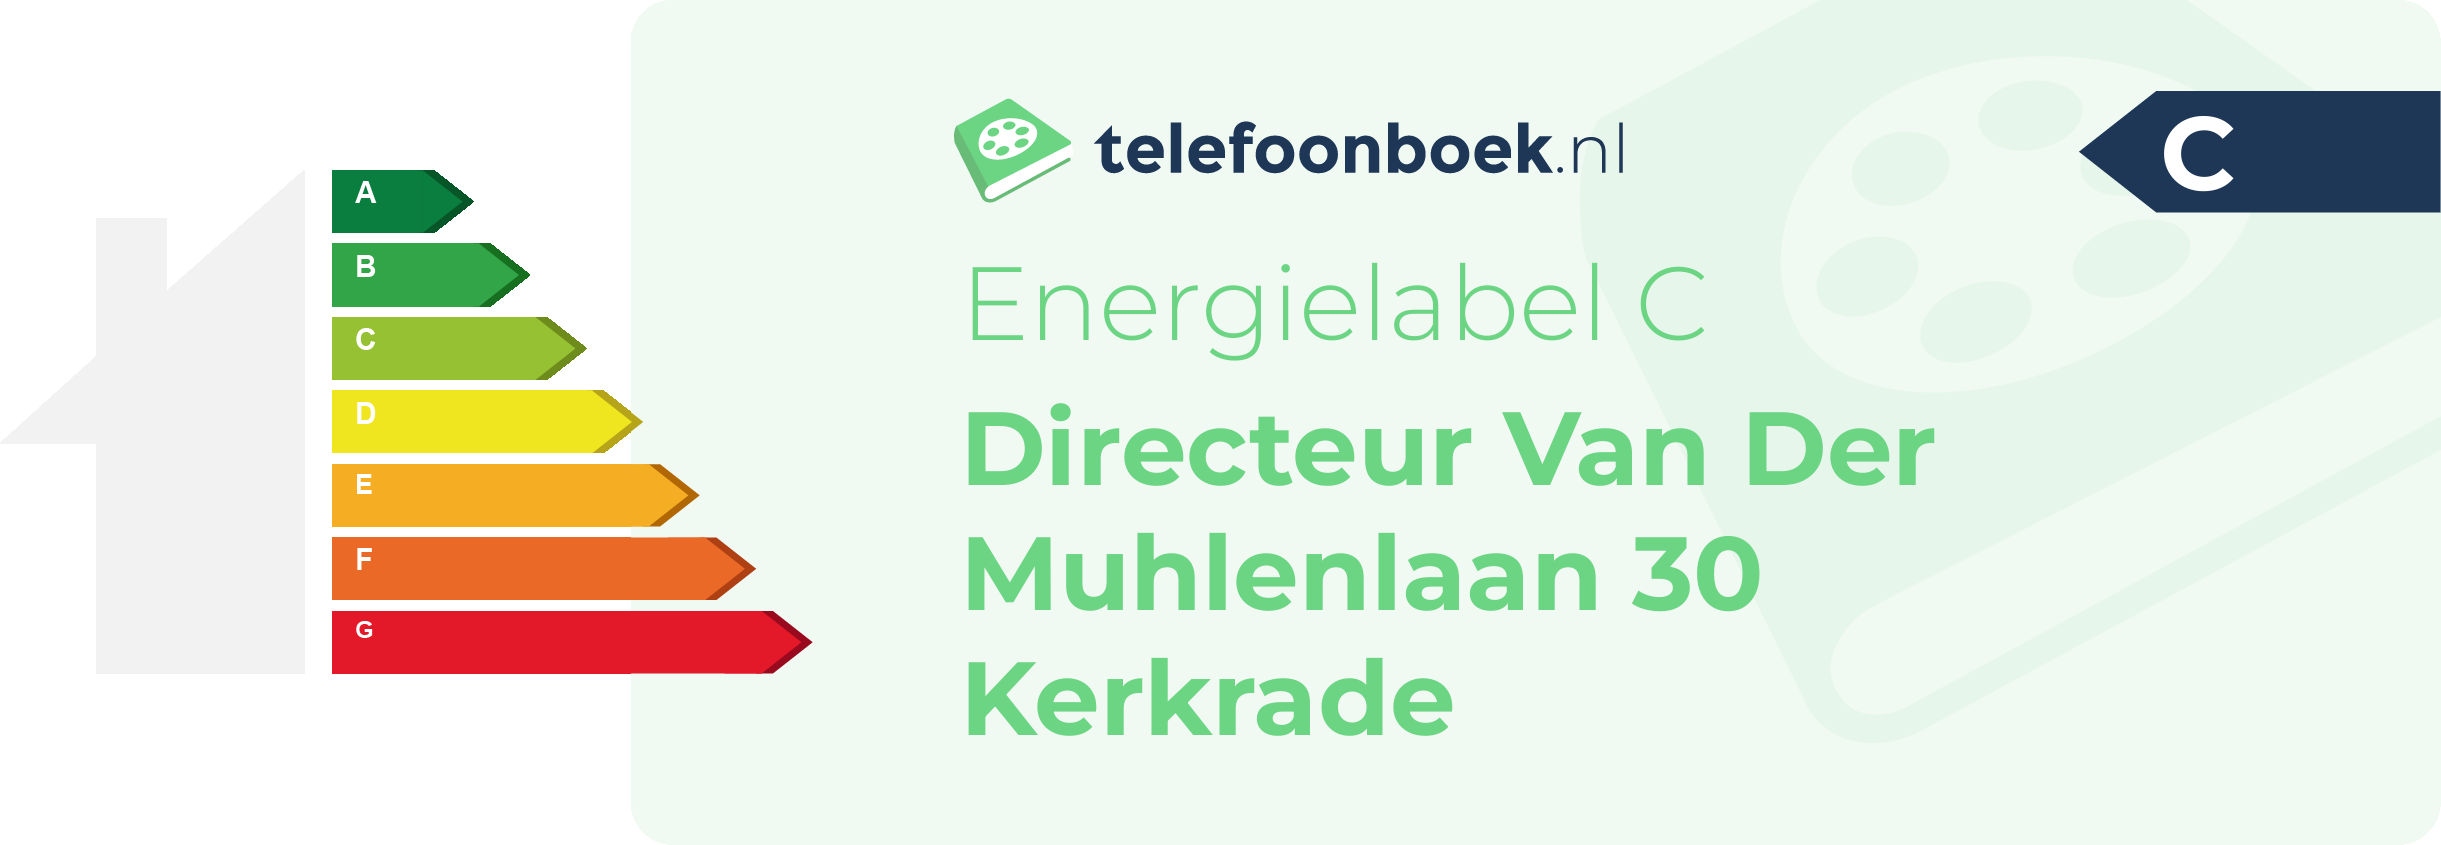 Energielabel Directeur Van Der Muhlenlaan 30 Kerkrade